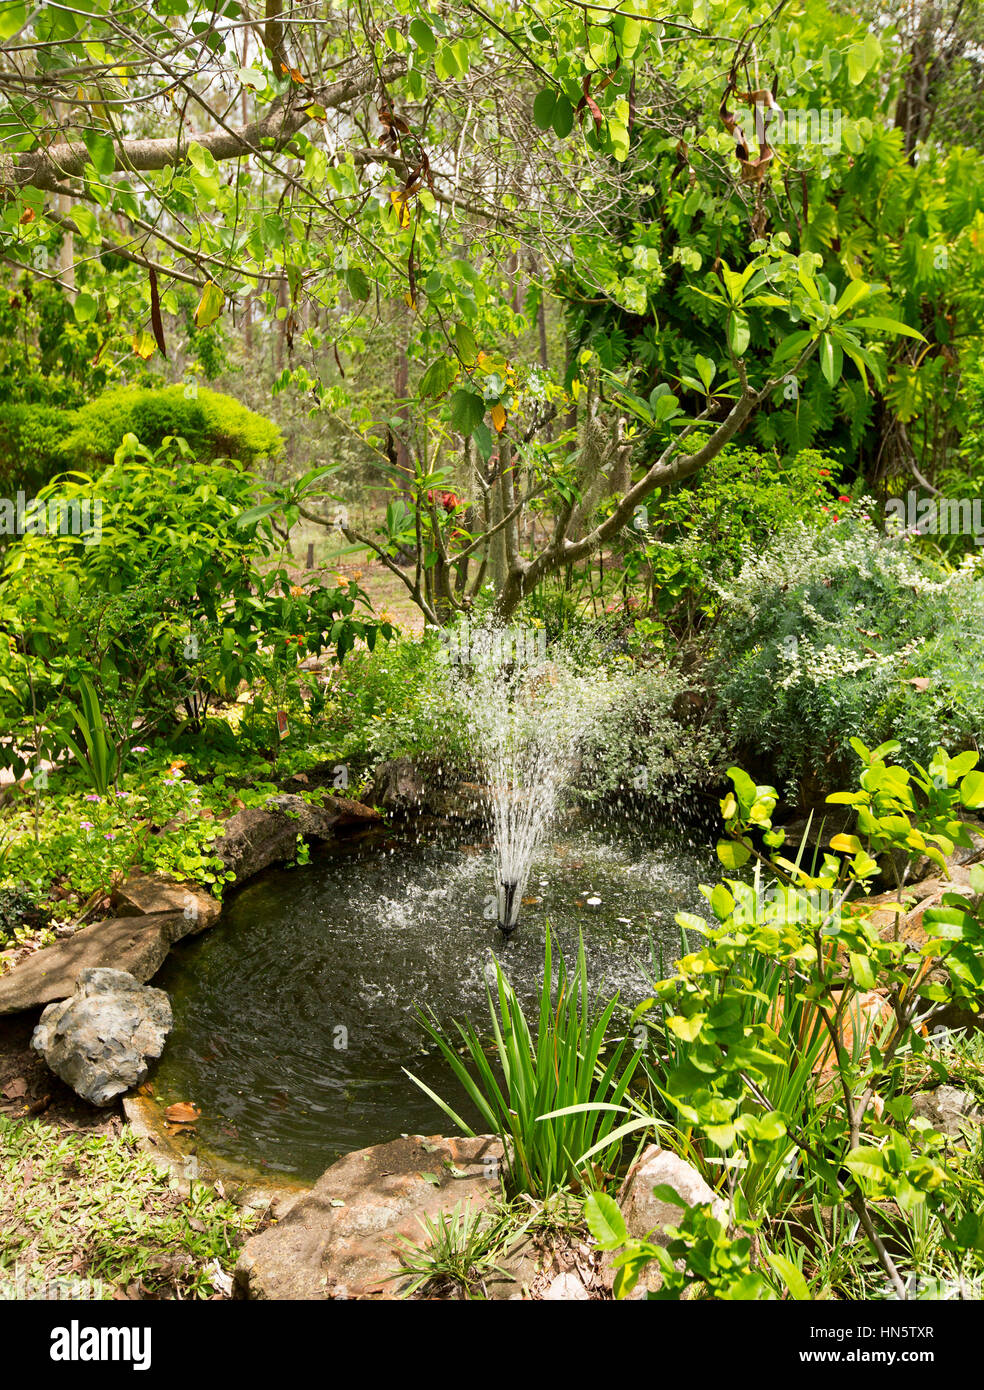 Jardín de agua con gran estanque y una fuente central rodeada por árboles de sombreado y exuberante vegetación verde en Australia Foto de stock